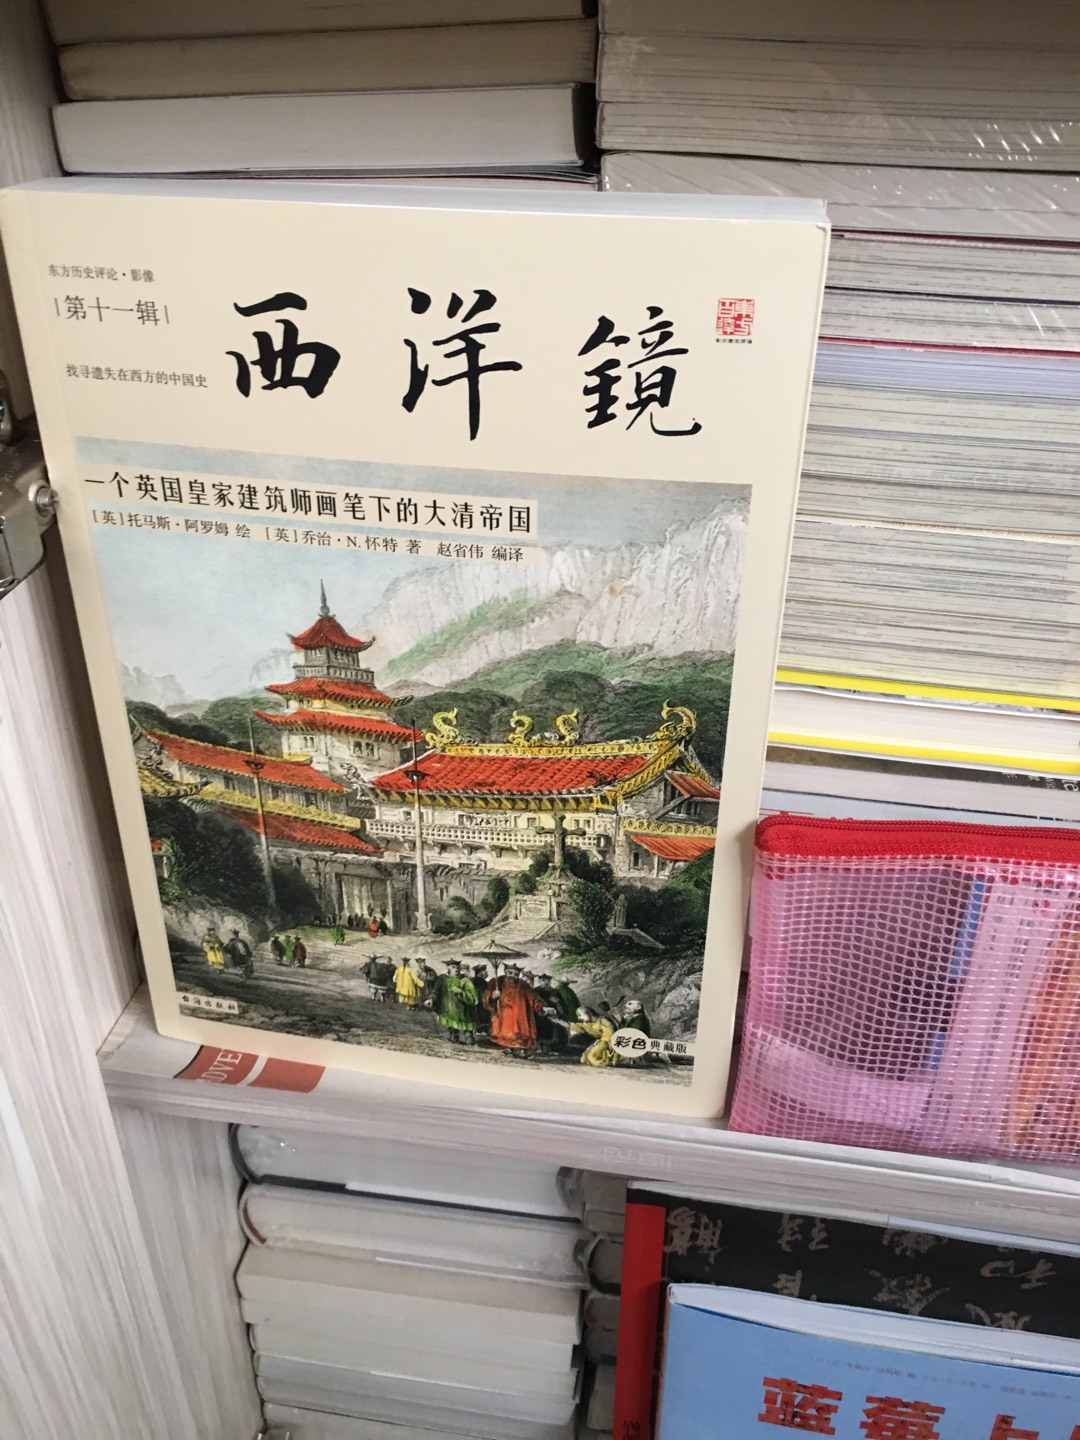 早于斯诺的西行漫记一年向世界介绍中国红军洋人的视角，传奇的经历珍贵的史料